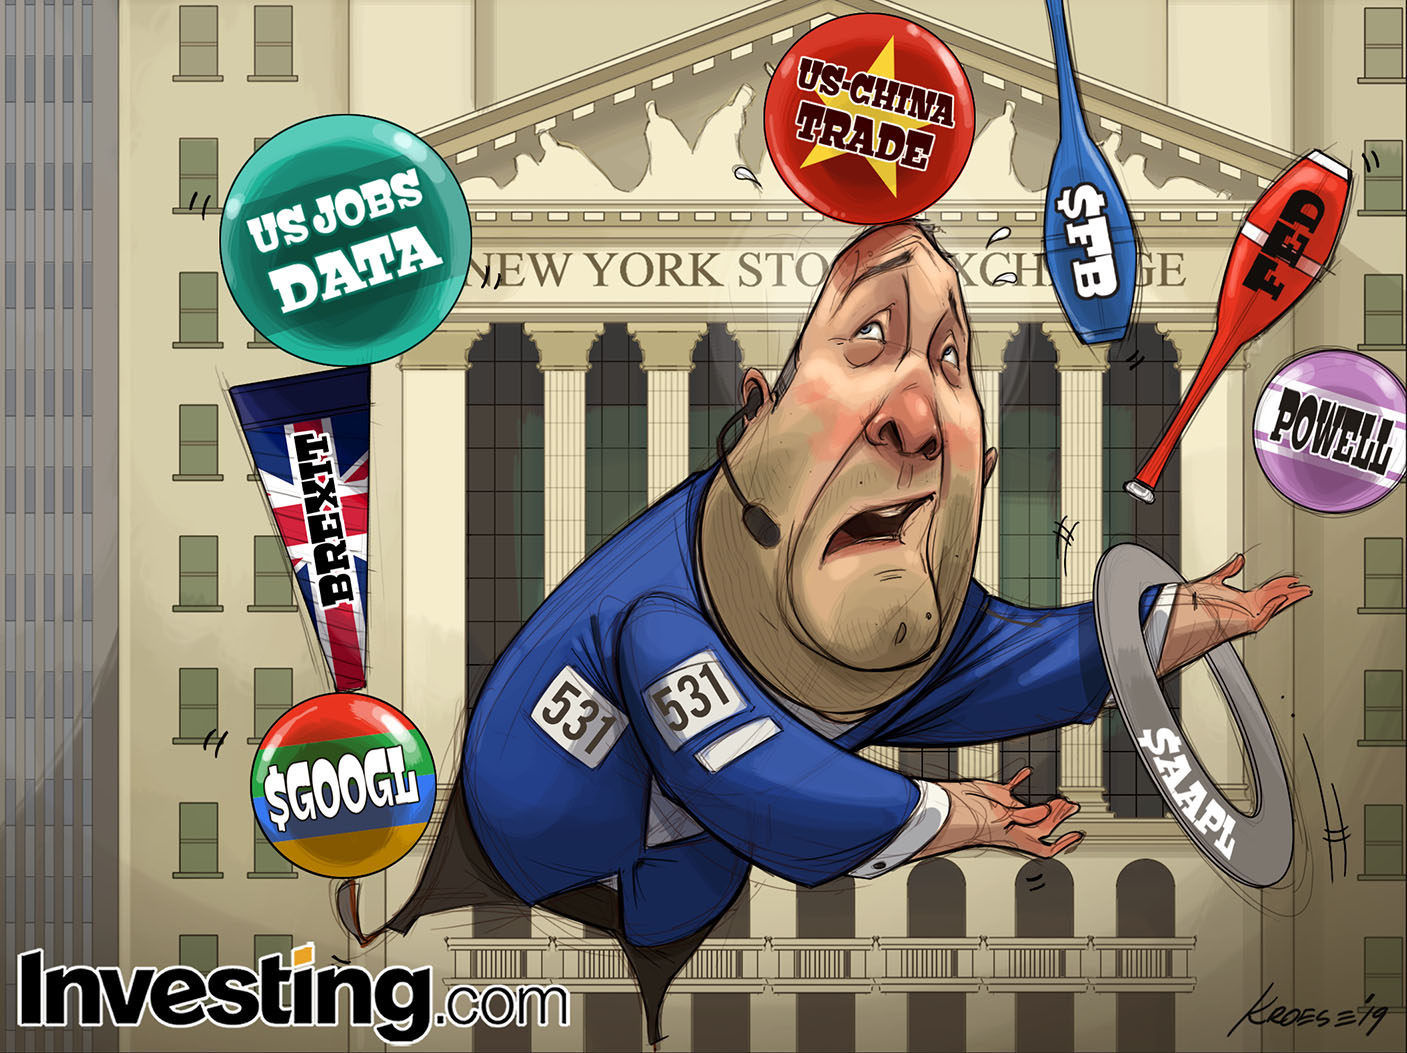 ФРС, отчеты и данные: у инвесторов есть шанс 